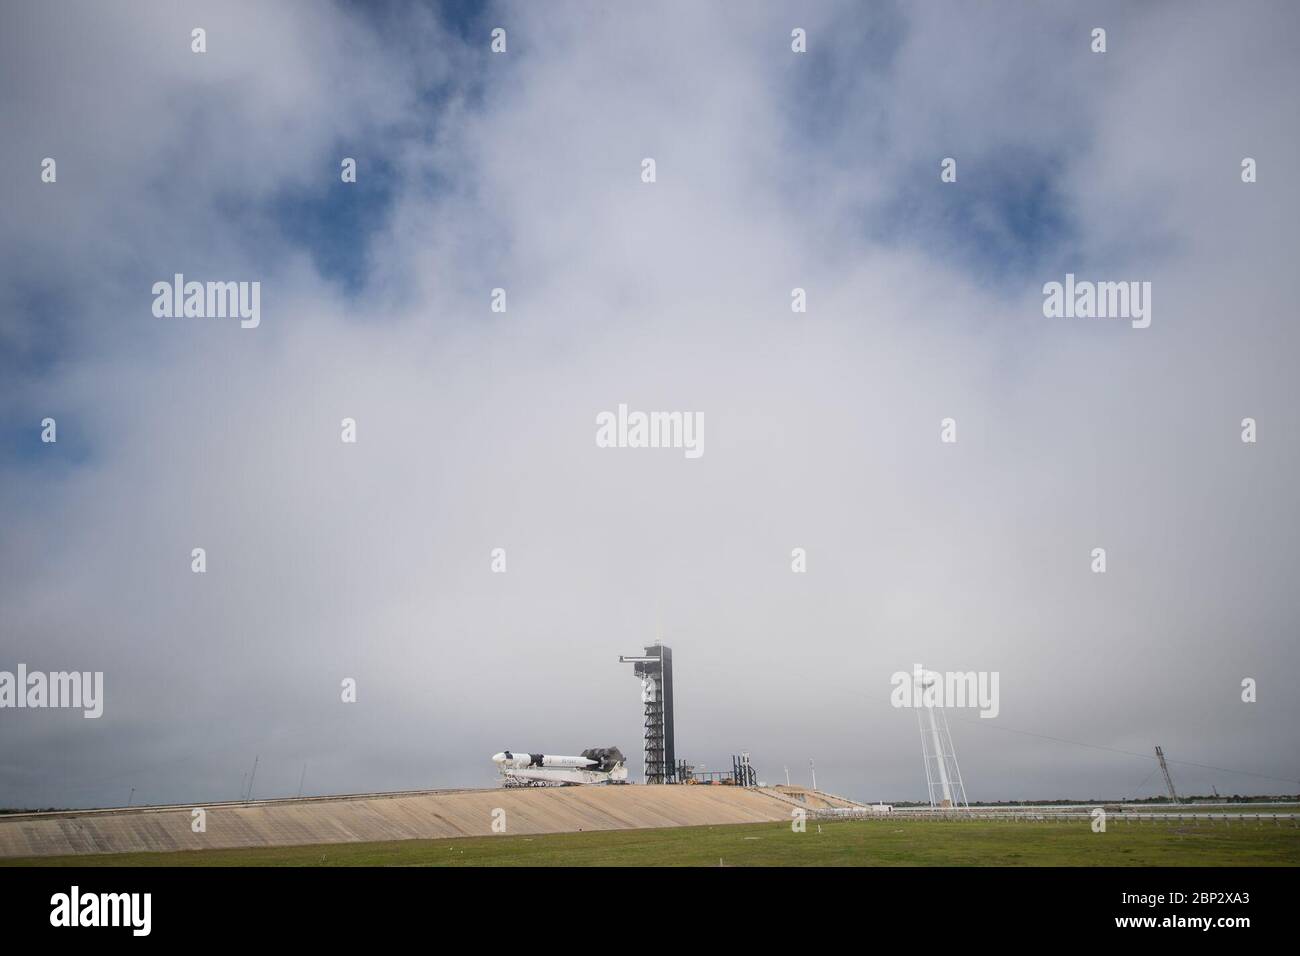 SpaceX Demo-1 Rollout EINE SpaceX Falcon 9 Rakete mit dem Crew Dragon Raumschiff an Bord wird gesehen, wie es auf die Startrampe beim Launch Complex 39A gerollt wird, während die Vorbereitungen für die Demo-1 Mission, 28. Februar 2019 im Kennedy Space Center in Florida fortgesetzt werden. Die Demo-1 Mission wird der erste Start eines kommerziell gebauten und betriebenen amerikanischen Raumschiffs- und Raumfahrtsystems sein, das für Menschen als Teil des NASA Commercial Crew Programms entwickelt wurde. Die Mission, die derzeit für einen Start um 2:49 Uhr am 2. März vorgesehen ist, dient als End-to-End-Test der Systemfunktionen Stockfoto